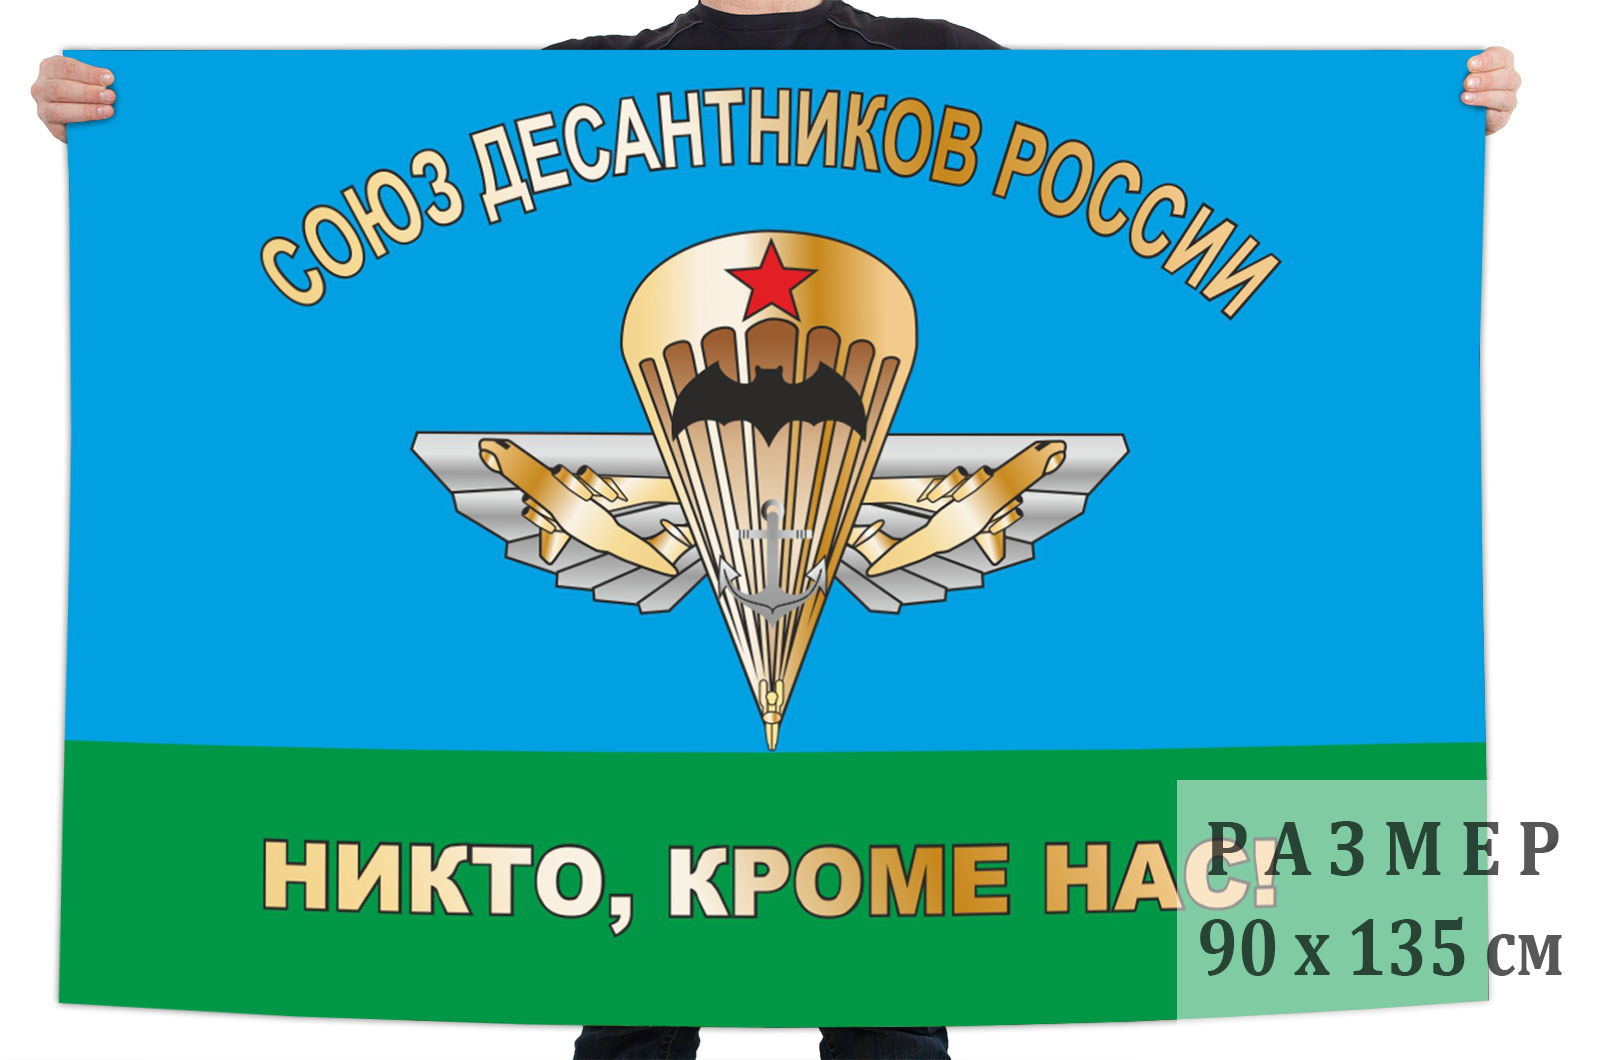 Заказать флаг Союза десантников России на выгодных условиях